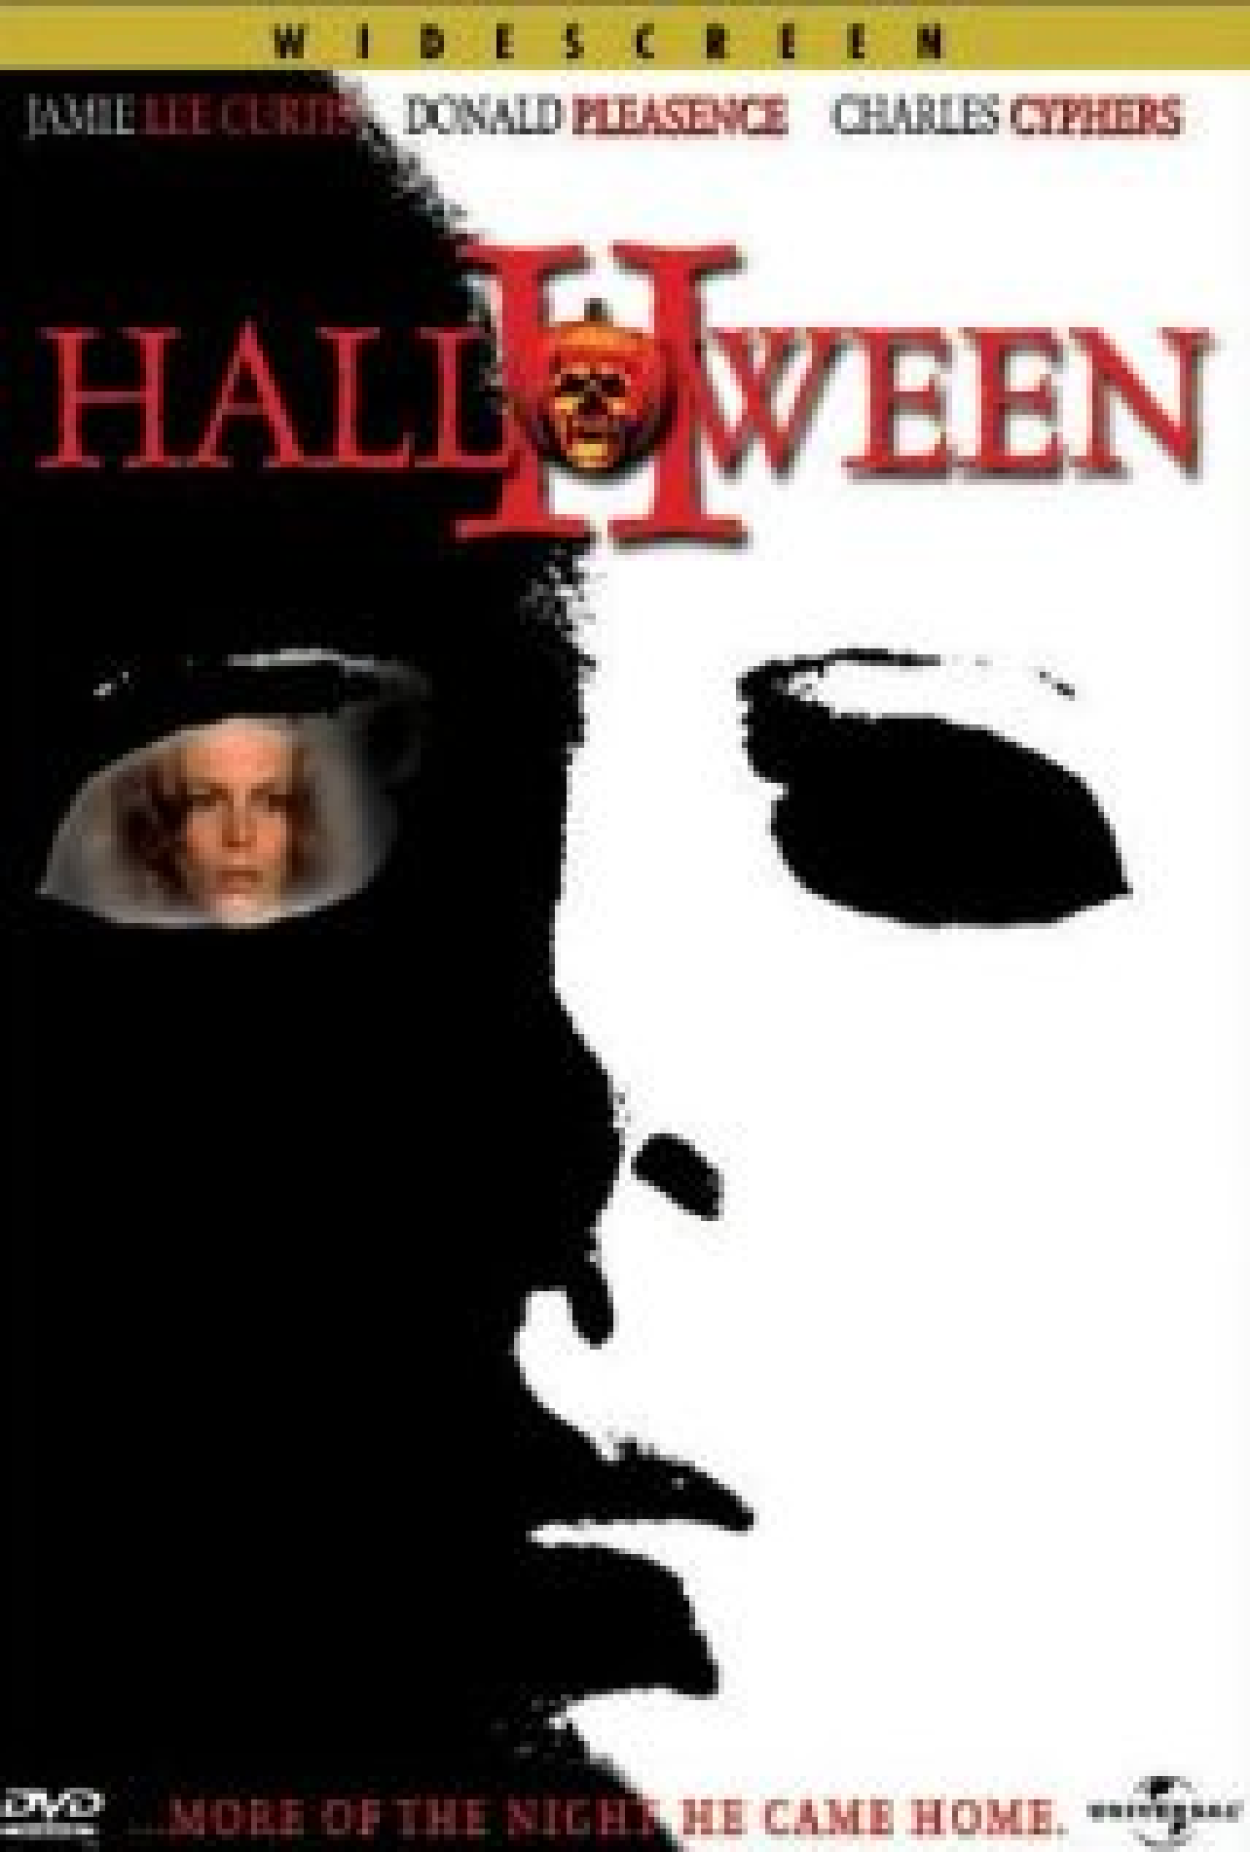 Notícias do filme Halloween - O Início - AdoroCinema